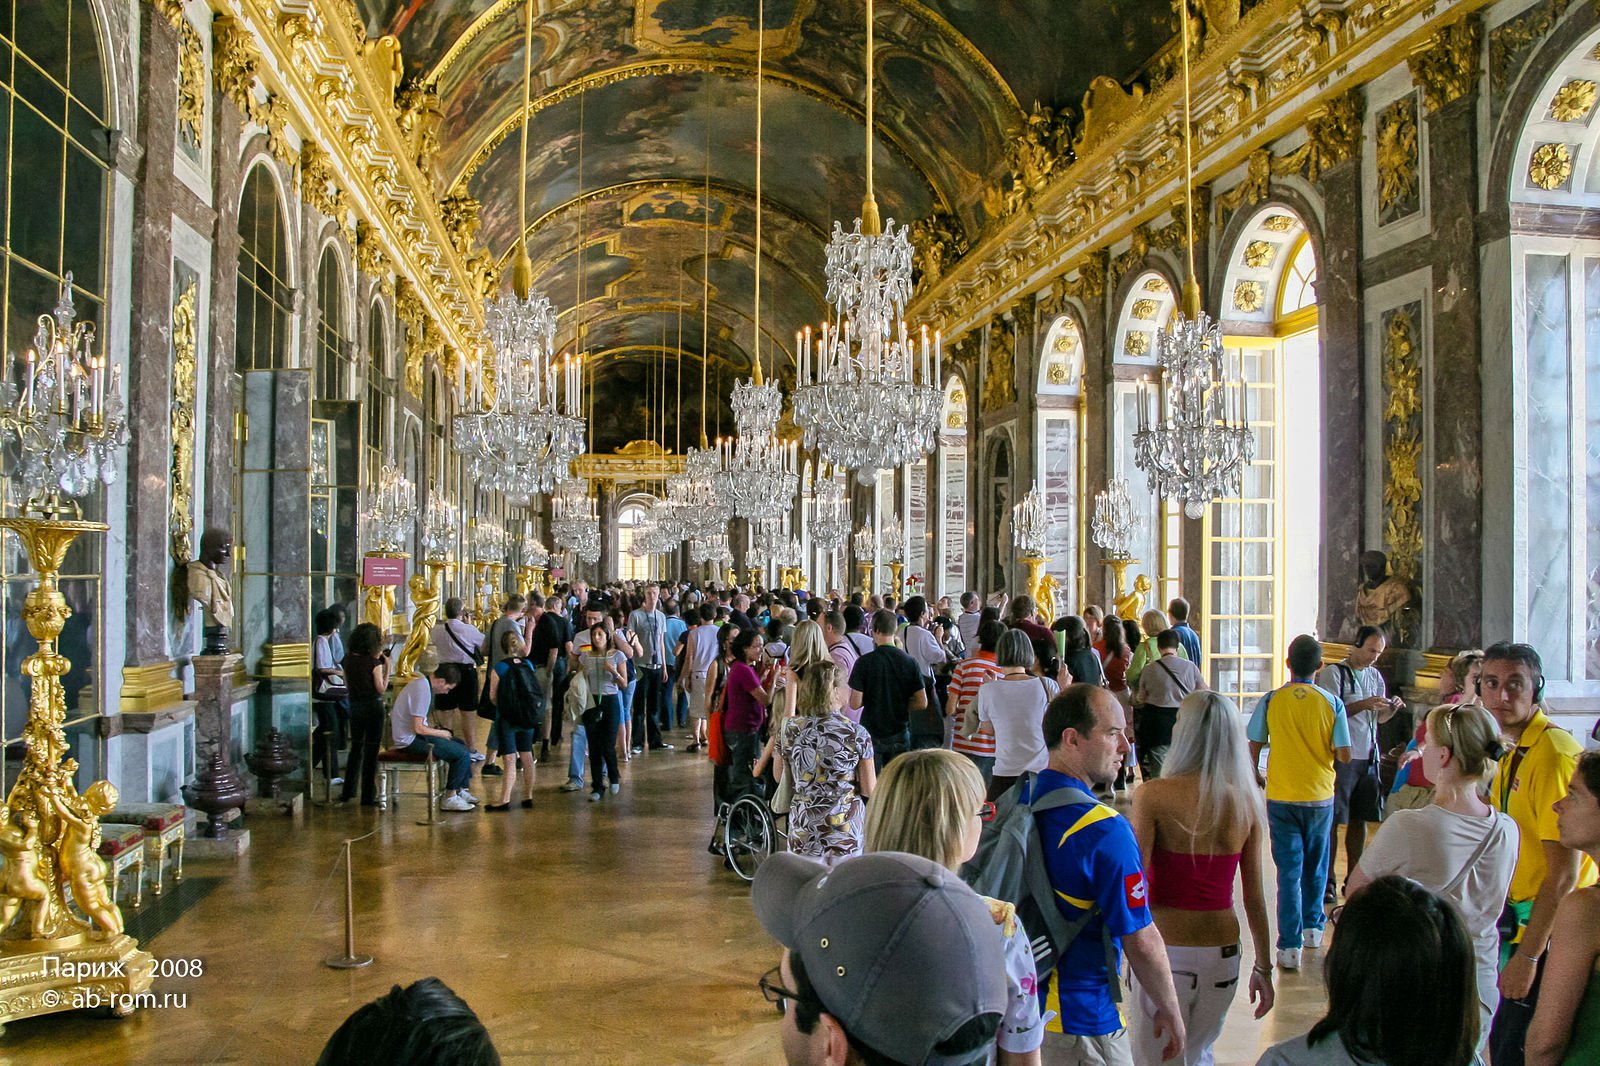 Галереи версаля. Версальский дворец, Версаль дворец Версаля. Зеркальная галерея Версальского дворца. Зеркальный зал Версальского дворца. Версальский дворец внутри зеркальная галерея.